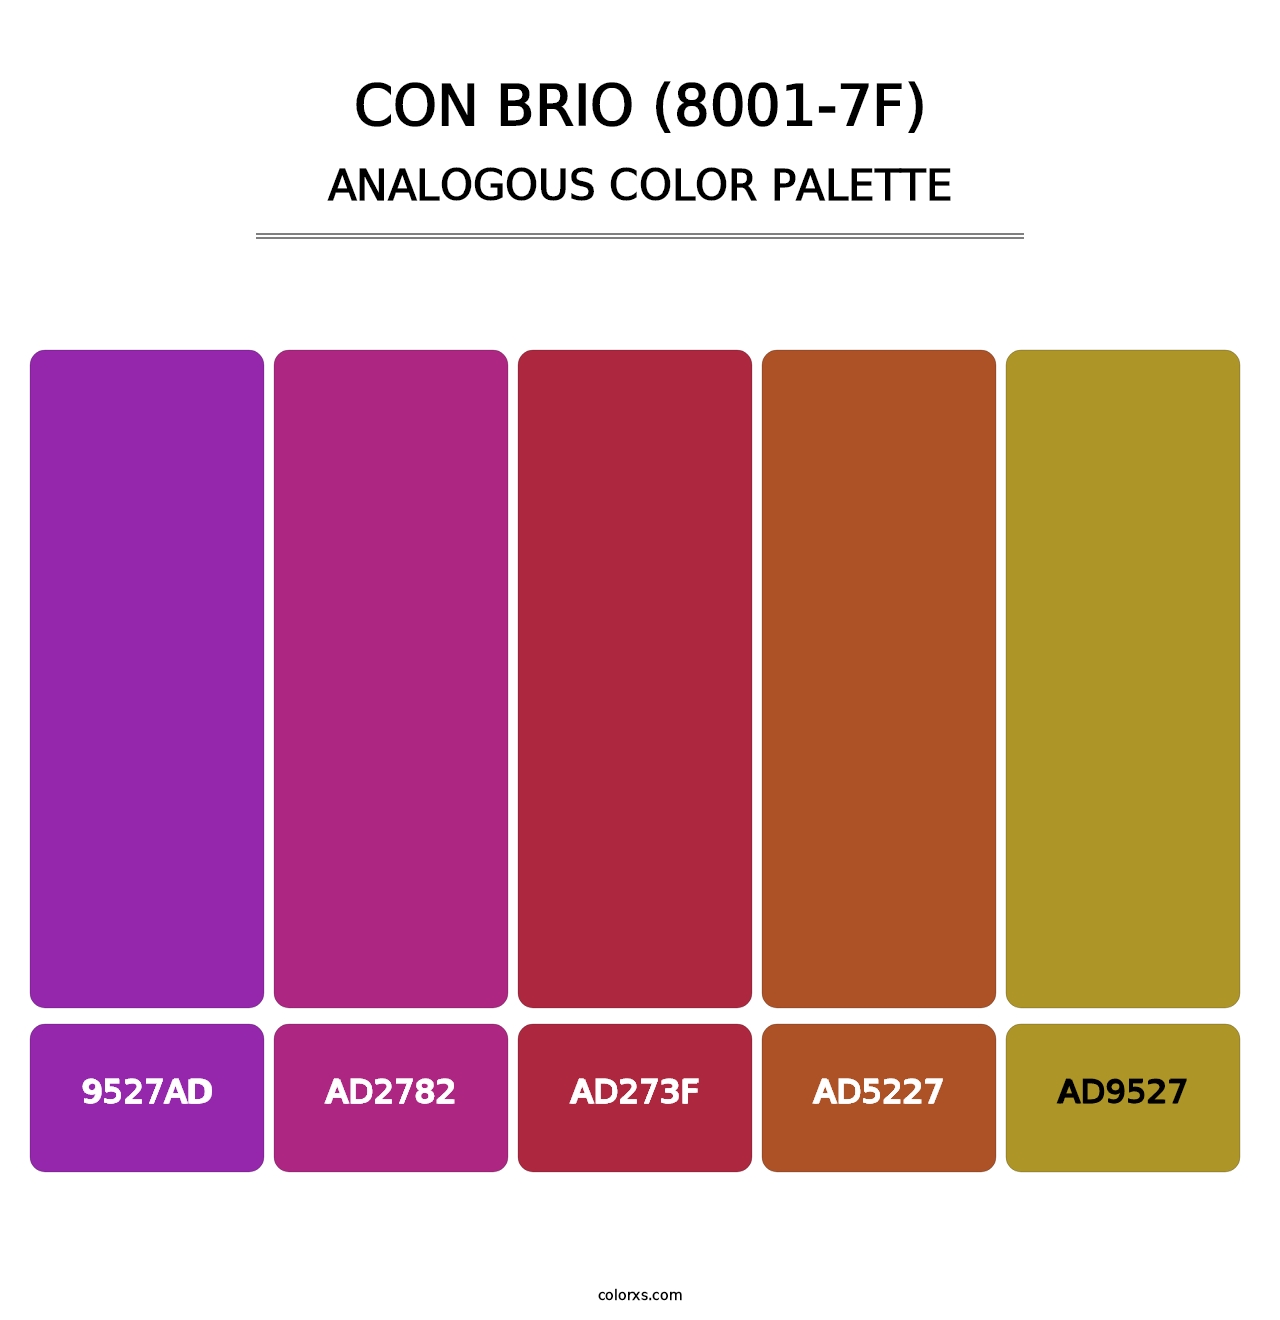 Con Brio (8001-7F) - Analogous Color Palette